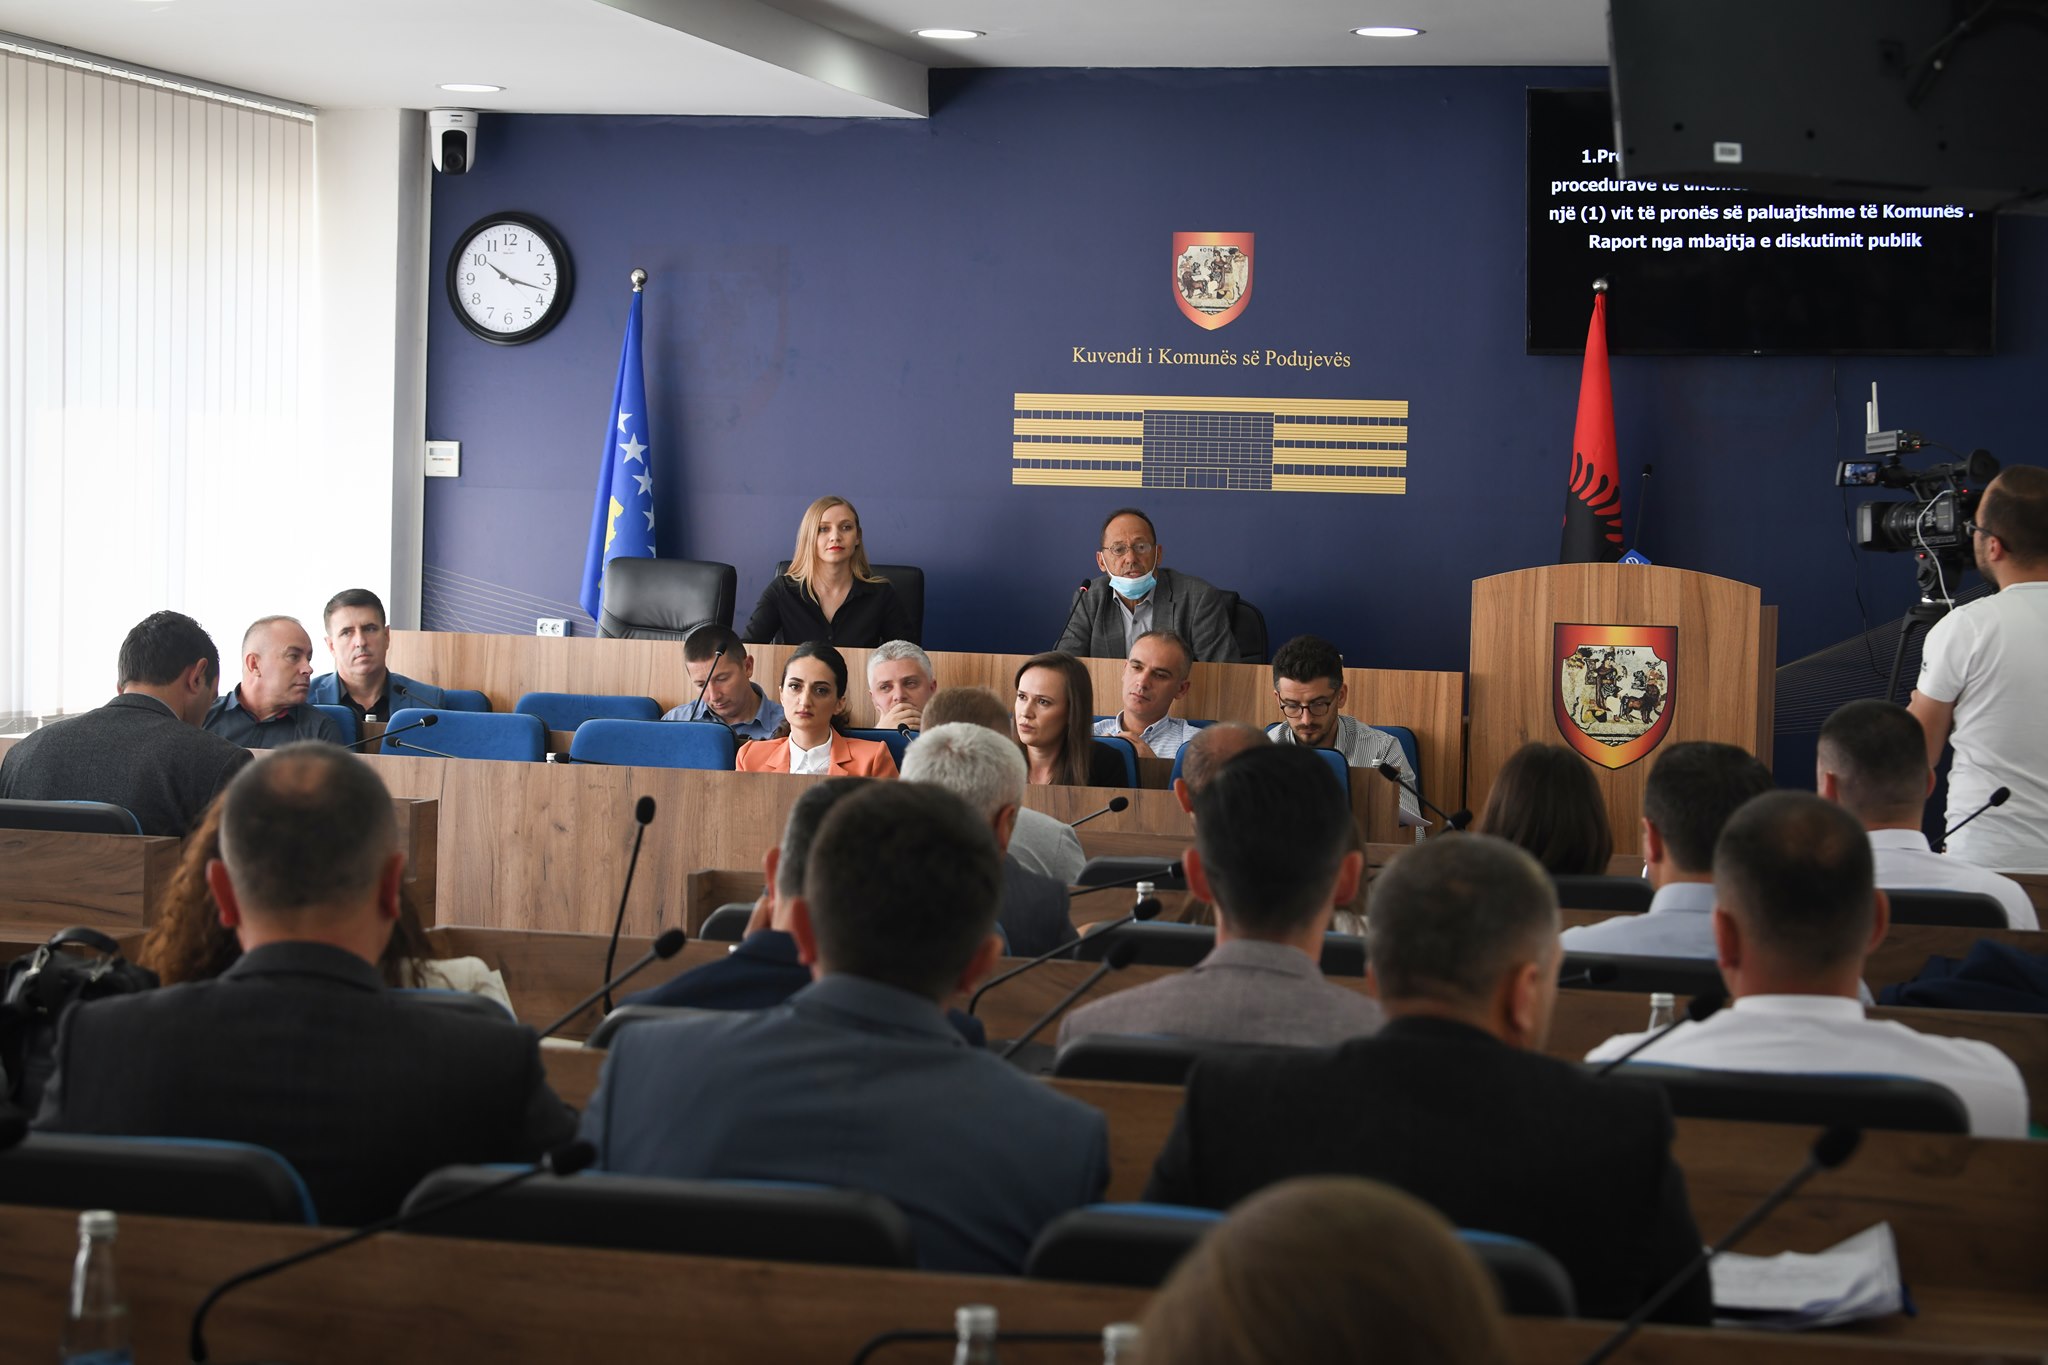  Kuvendi i komunës së Podujevës mbajti mbledhjen e radhës